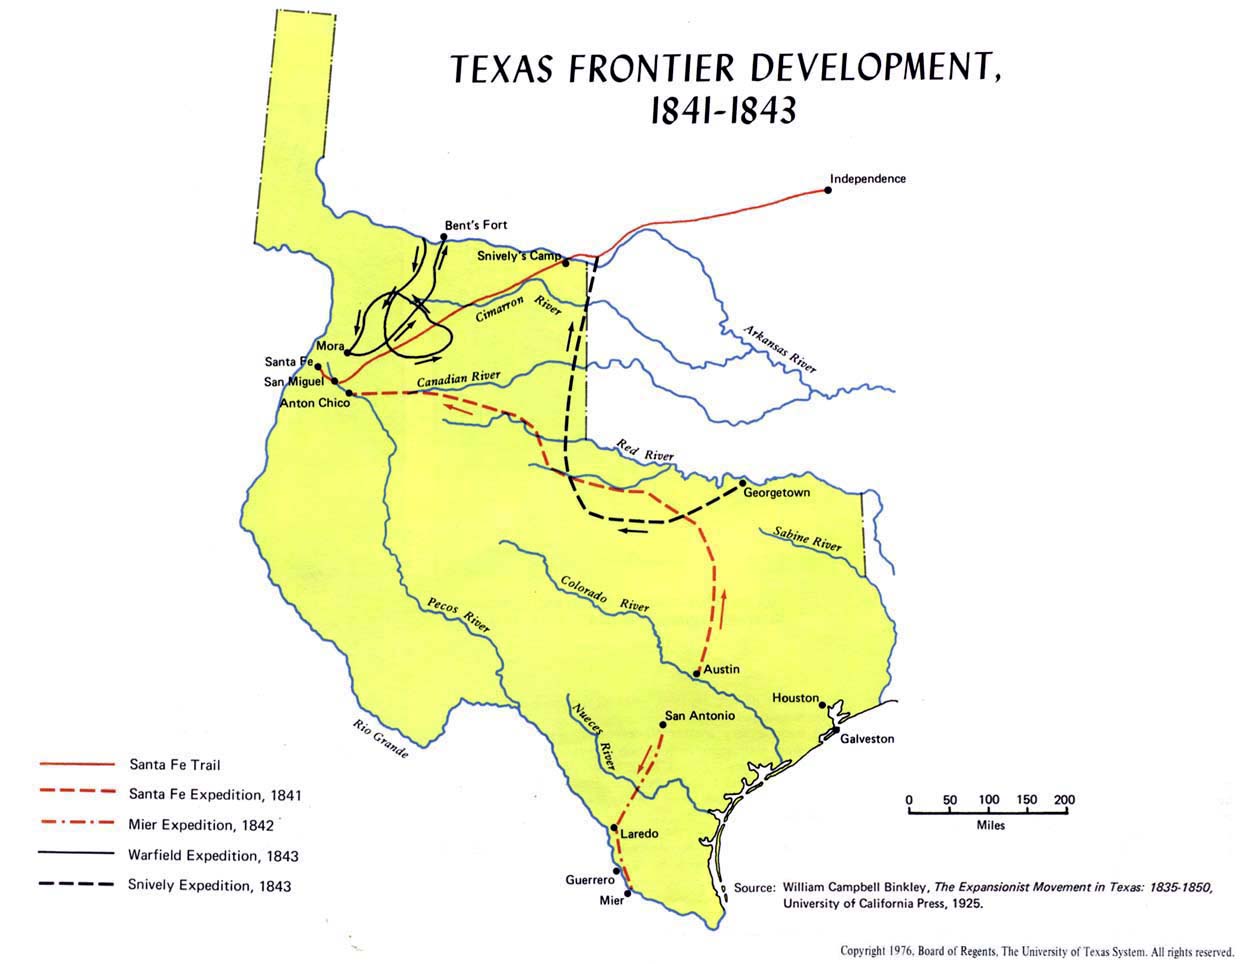 Texas Frontier Development, 1841 - 1843